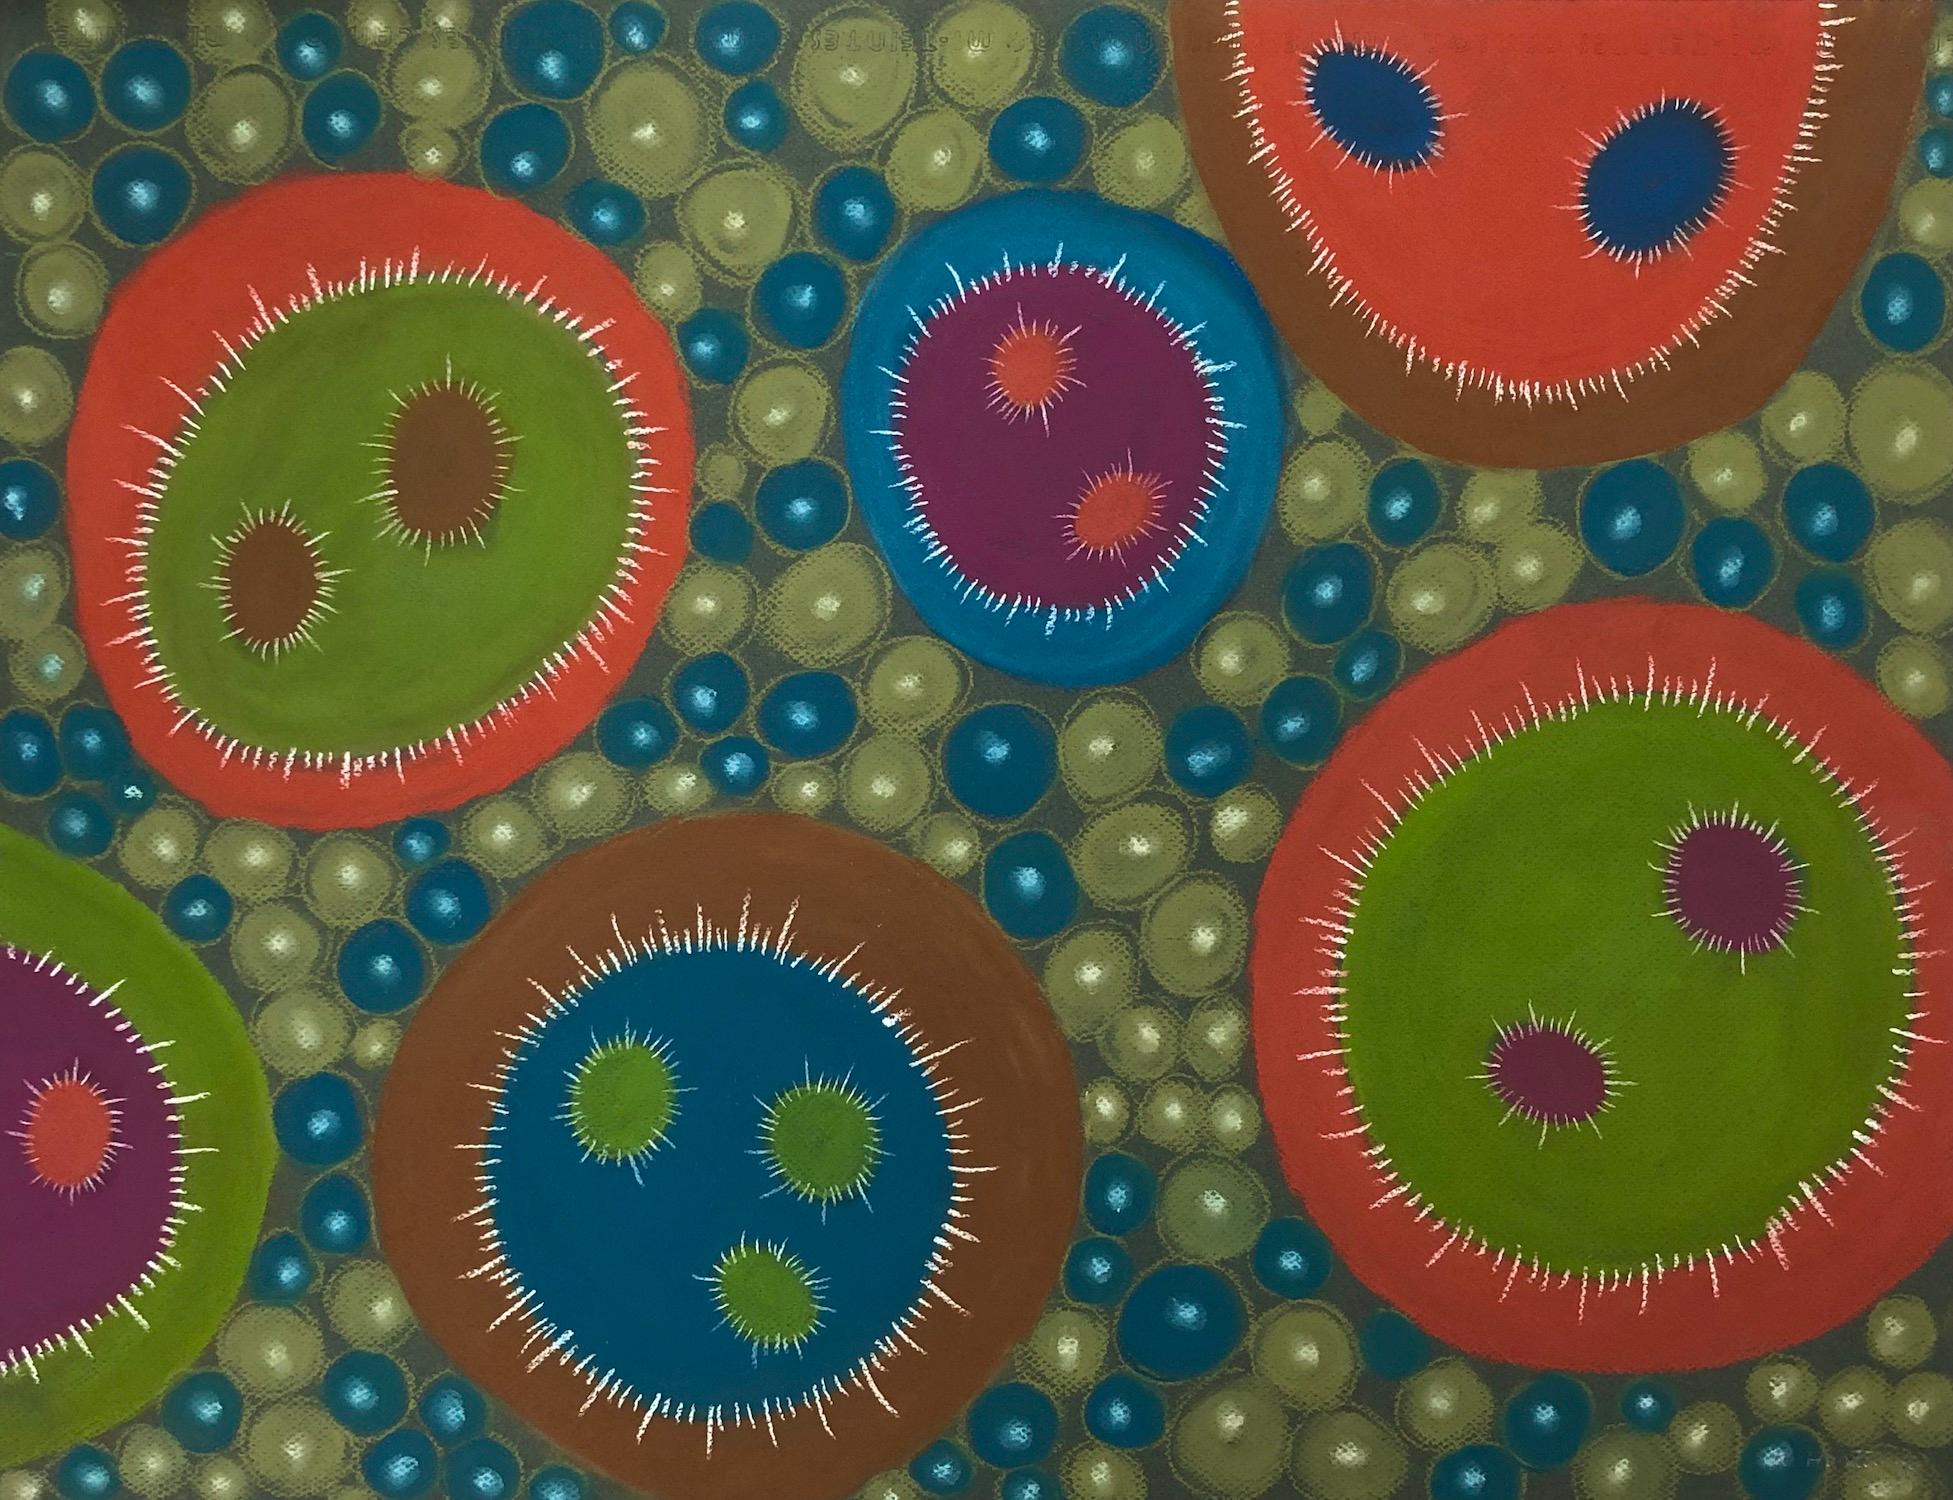 "Macroaction 14", pastel, drawings, microscopic, blue, orange, green, brown